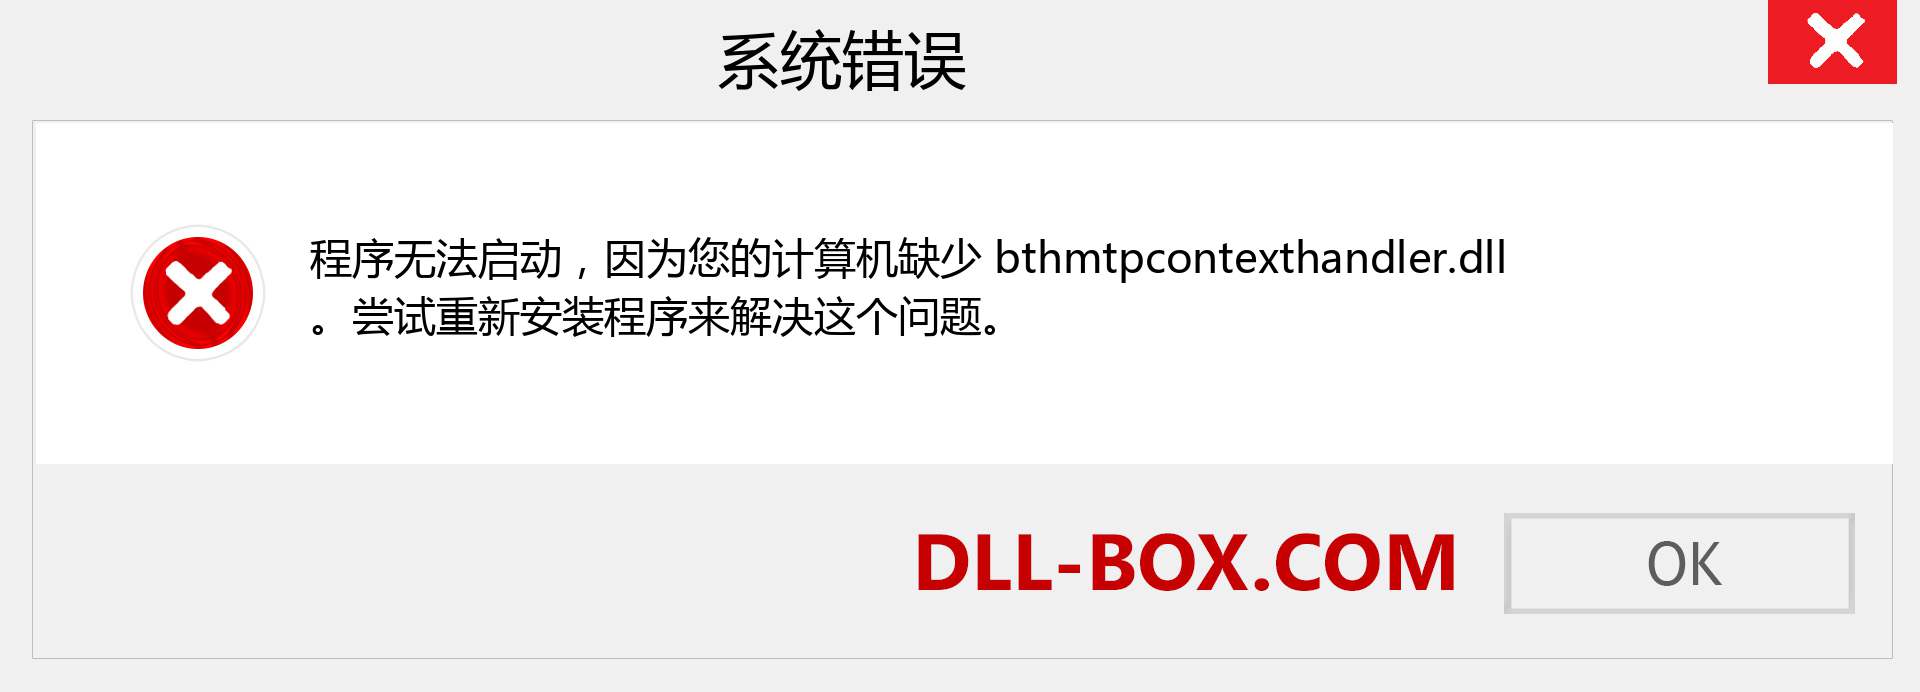 bthmtpcontexthandler.dll 文件丢失？。 适用于 Windows 7、8、10 的下载 - 修复 Windows、照片、图像上的 bthmtpcontexthandler dll 丢失错误